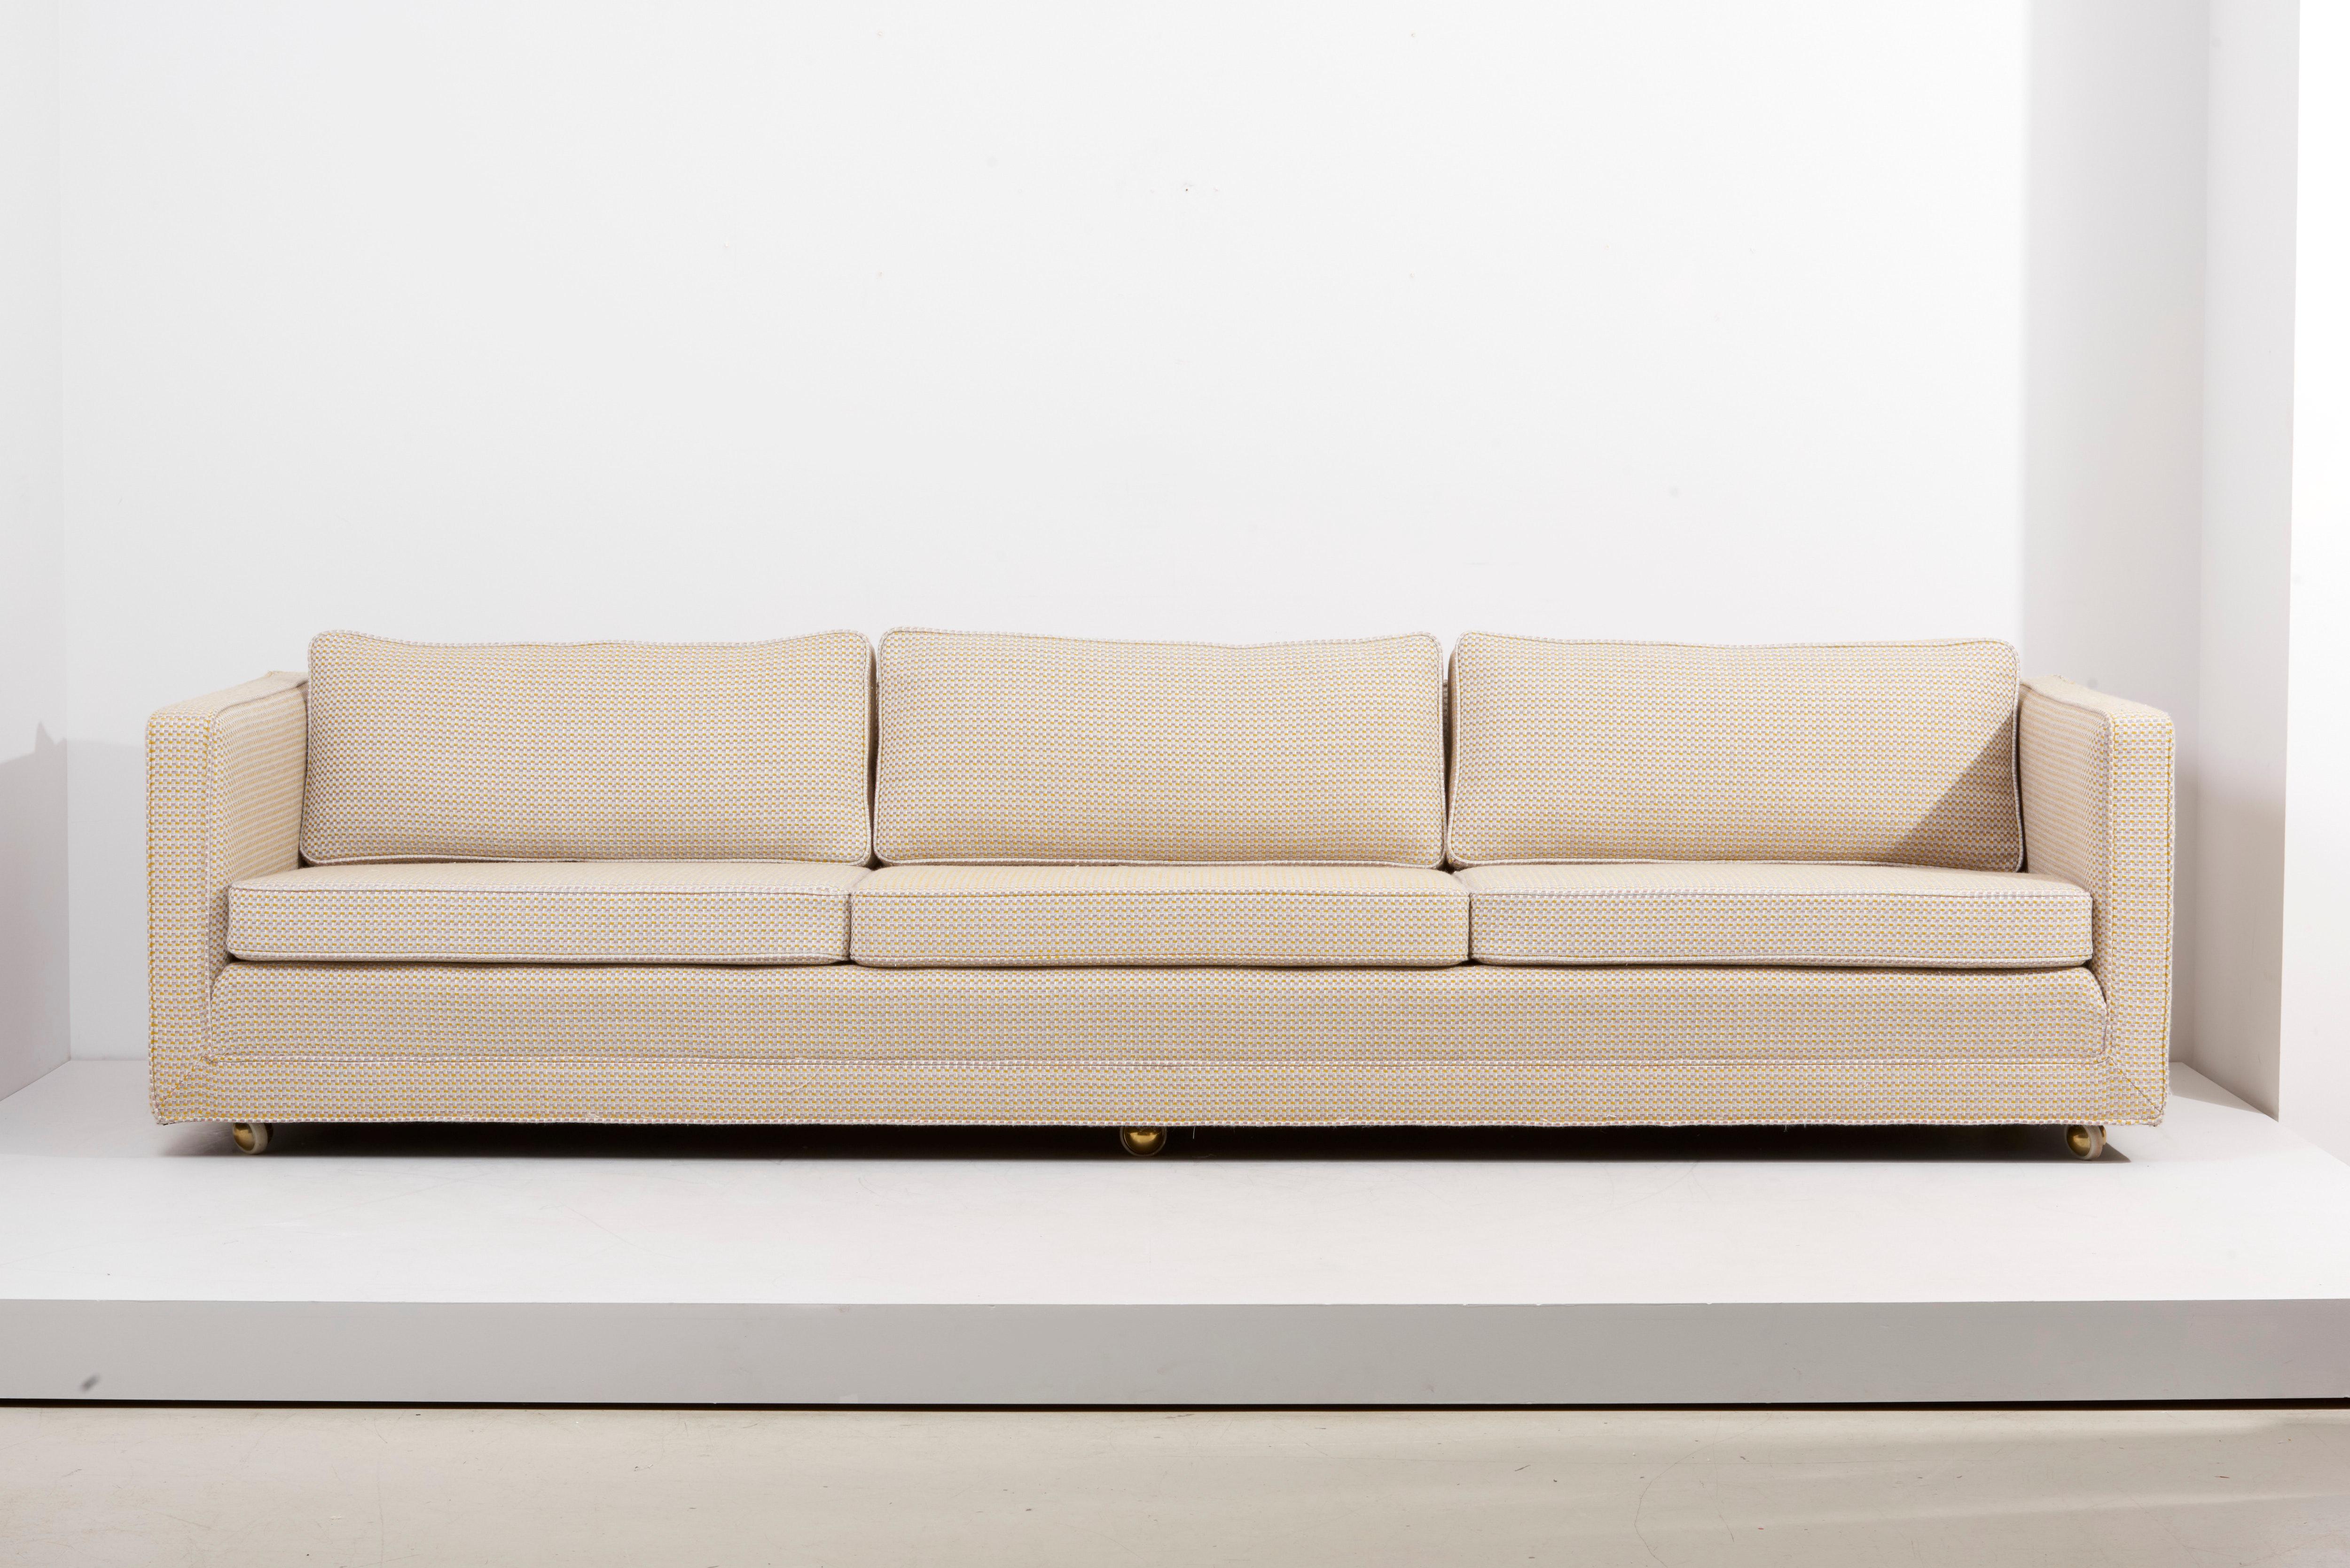 Edward Wormley Smoking-Sofa für Dunbar, USA 1960er Jahre. Dreisitziges Sofa mit jeweils drei Sitz- und Rückenkissen. Alles frisch gepolstert in einem schönen De Ploeg-Stoff.